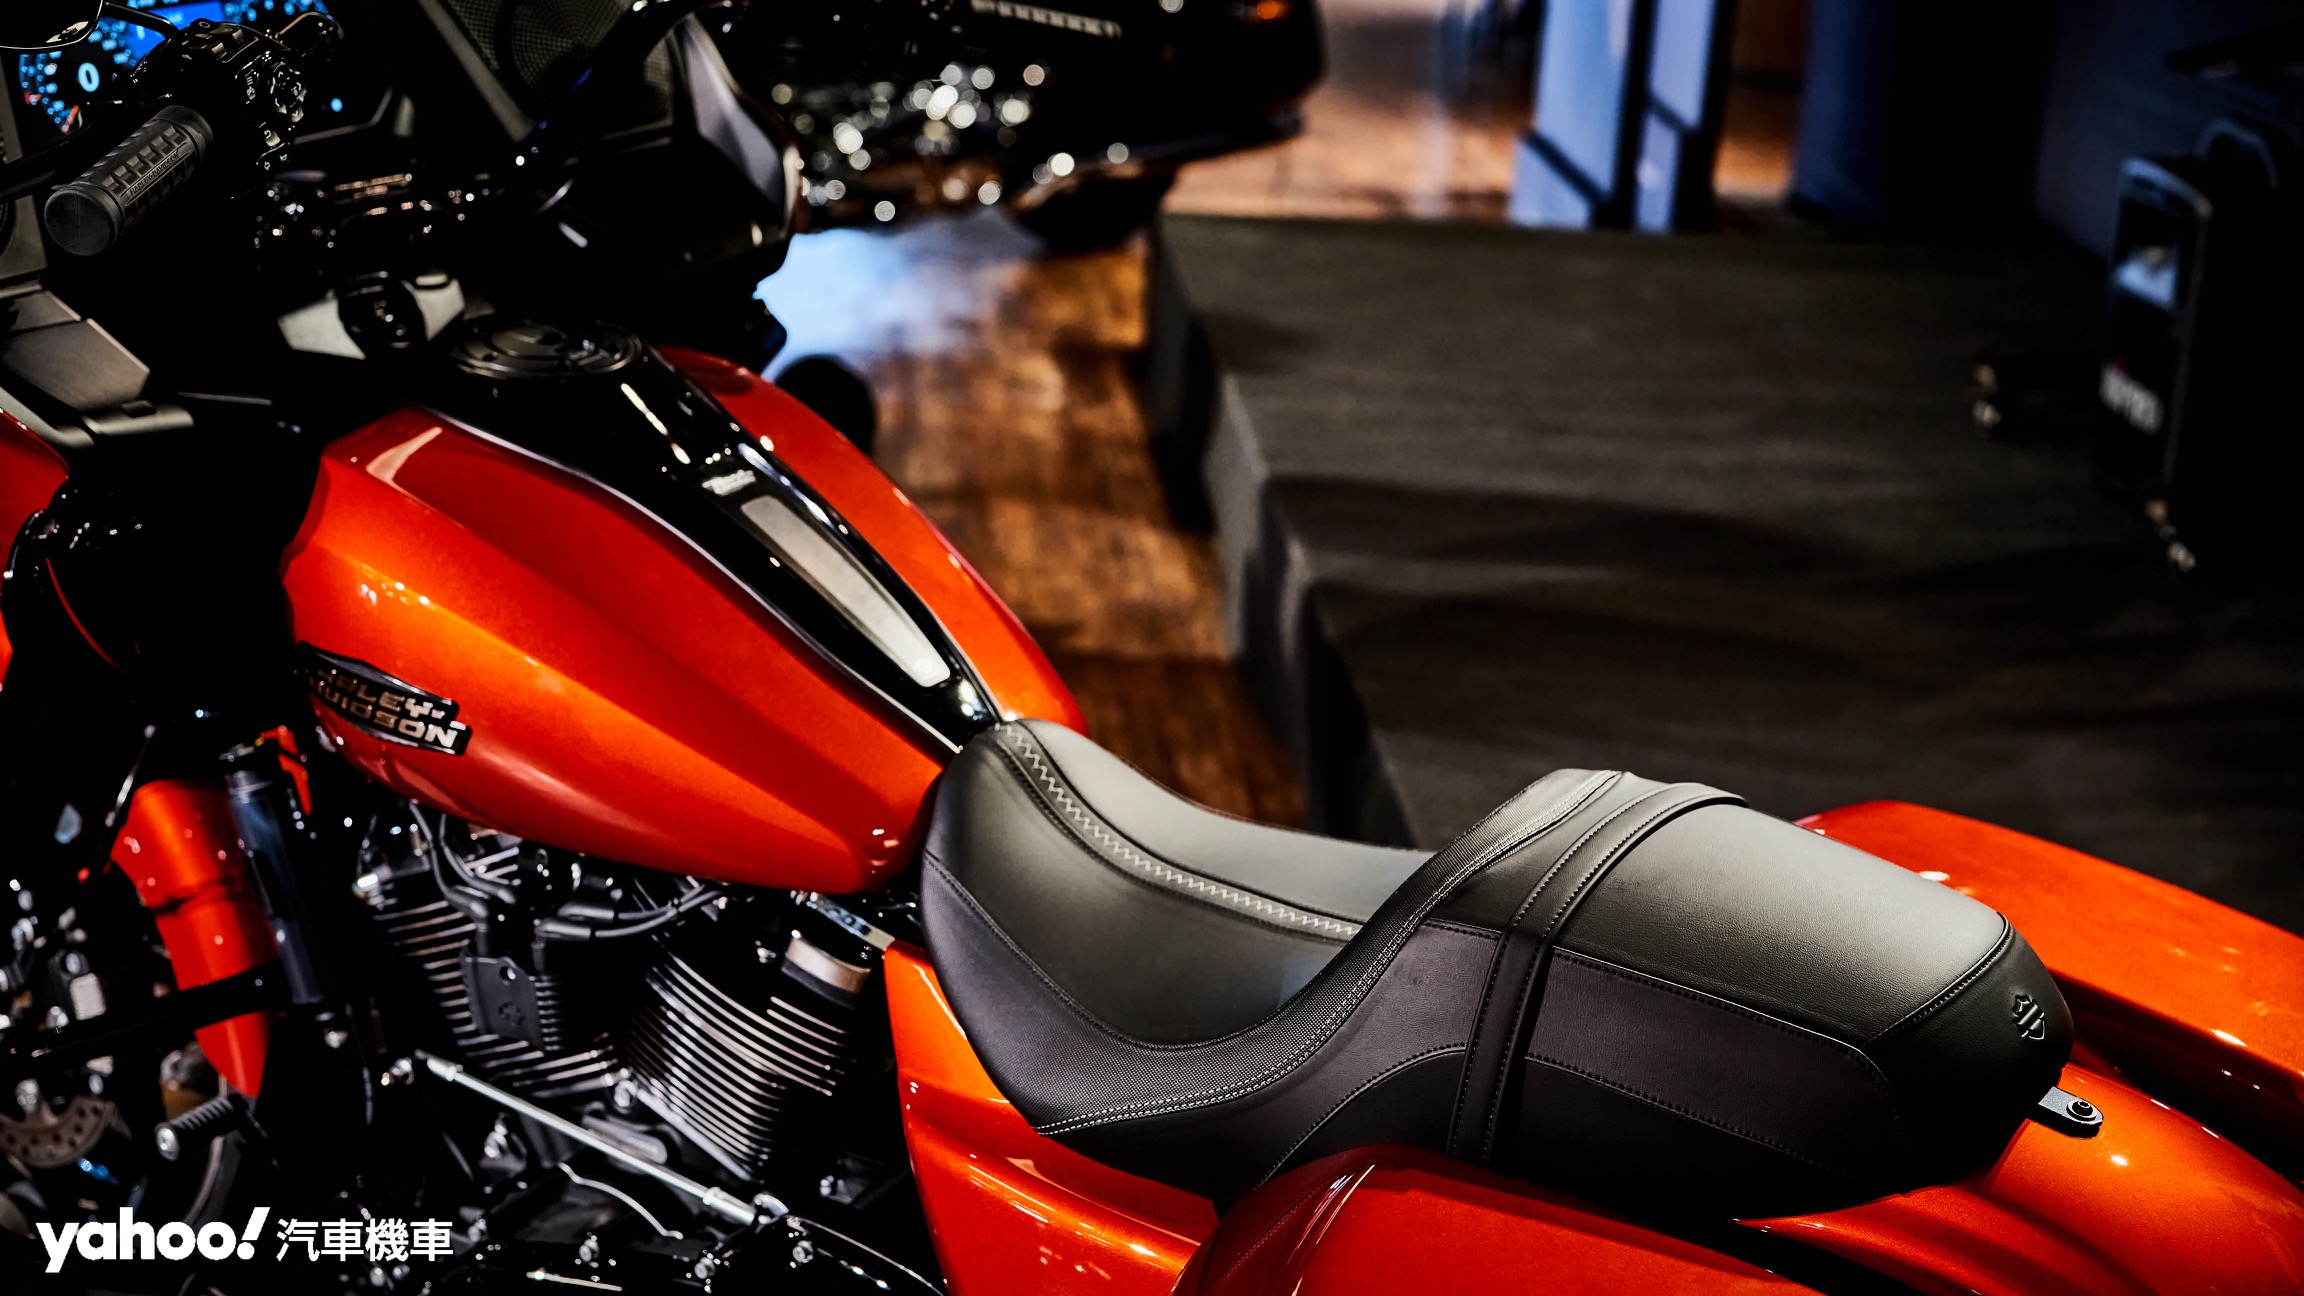 強調長程旅途的舒適性與騎乘感受，Harley-Davidson針對把手、騎士三角與乘坐感本身作出調整且為全新Road Glide和Street Glide裝配基於人體工學設計的全新座墊。